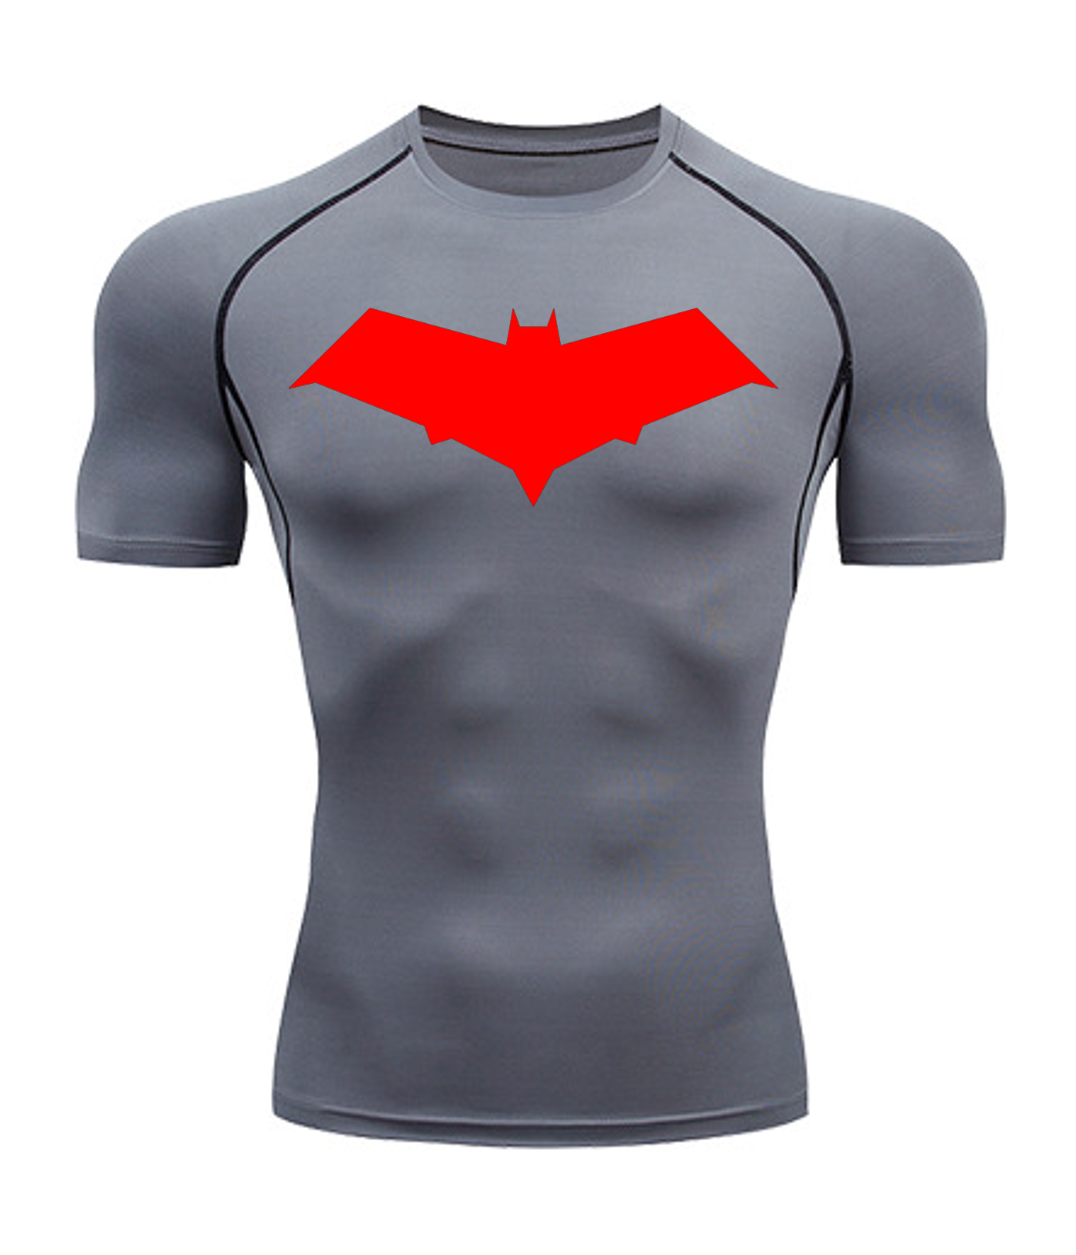 Twisted Udøve sport Selvrespekt Red Hood Short Sleeve Compression Shirt – Gotham's Tailor